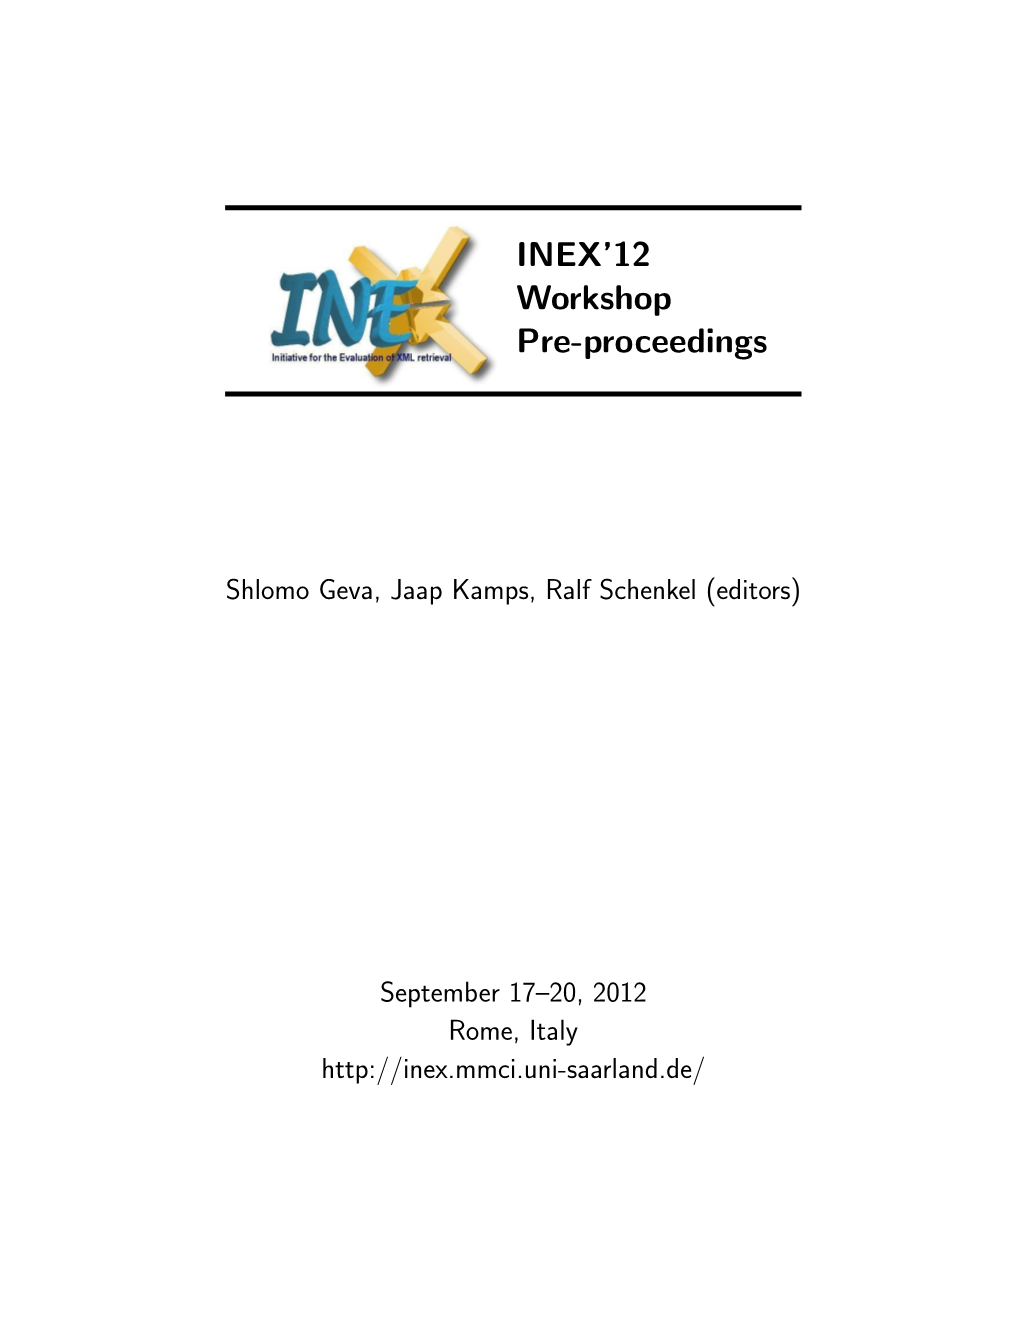 INEX'12 Workshop Pre-Proceedings